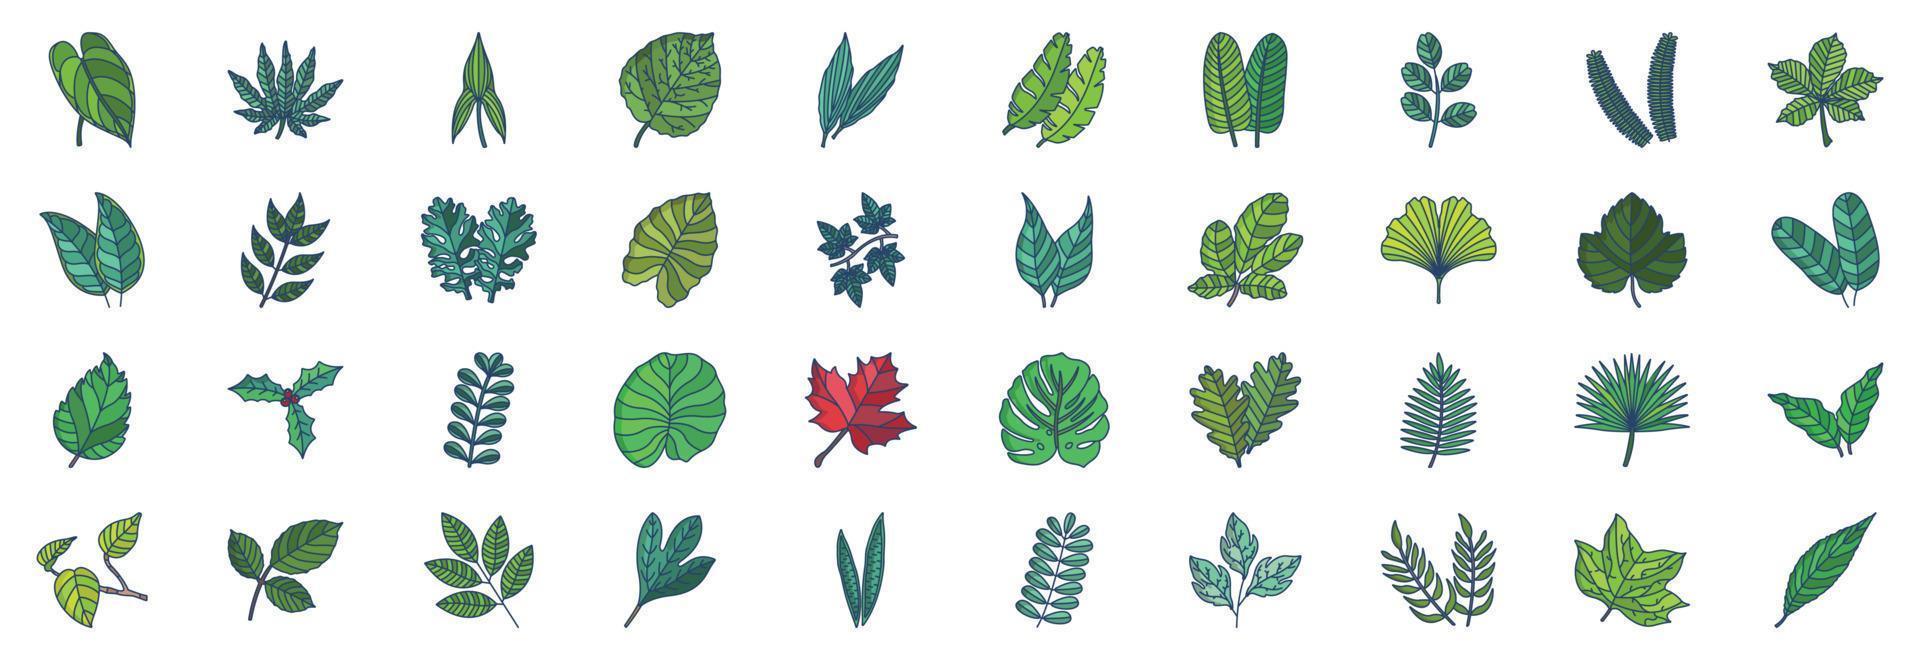 coleção de ícones relacionados a folhas, incluindo ícones como antúrio, arália, aspidistra, castanha, cítrico e muito mais. ilustrações vetoriais, conjunto perfeito de pixels vetor